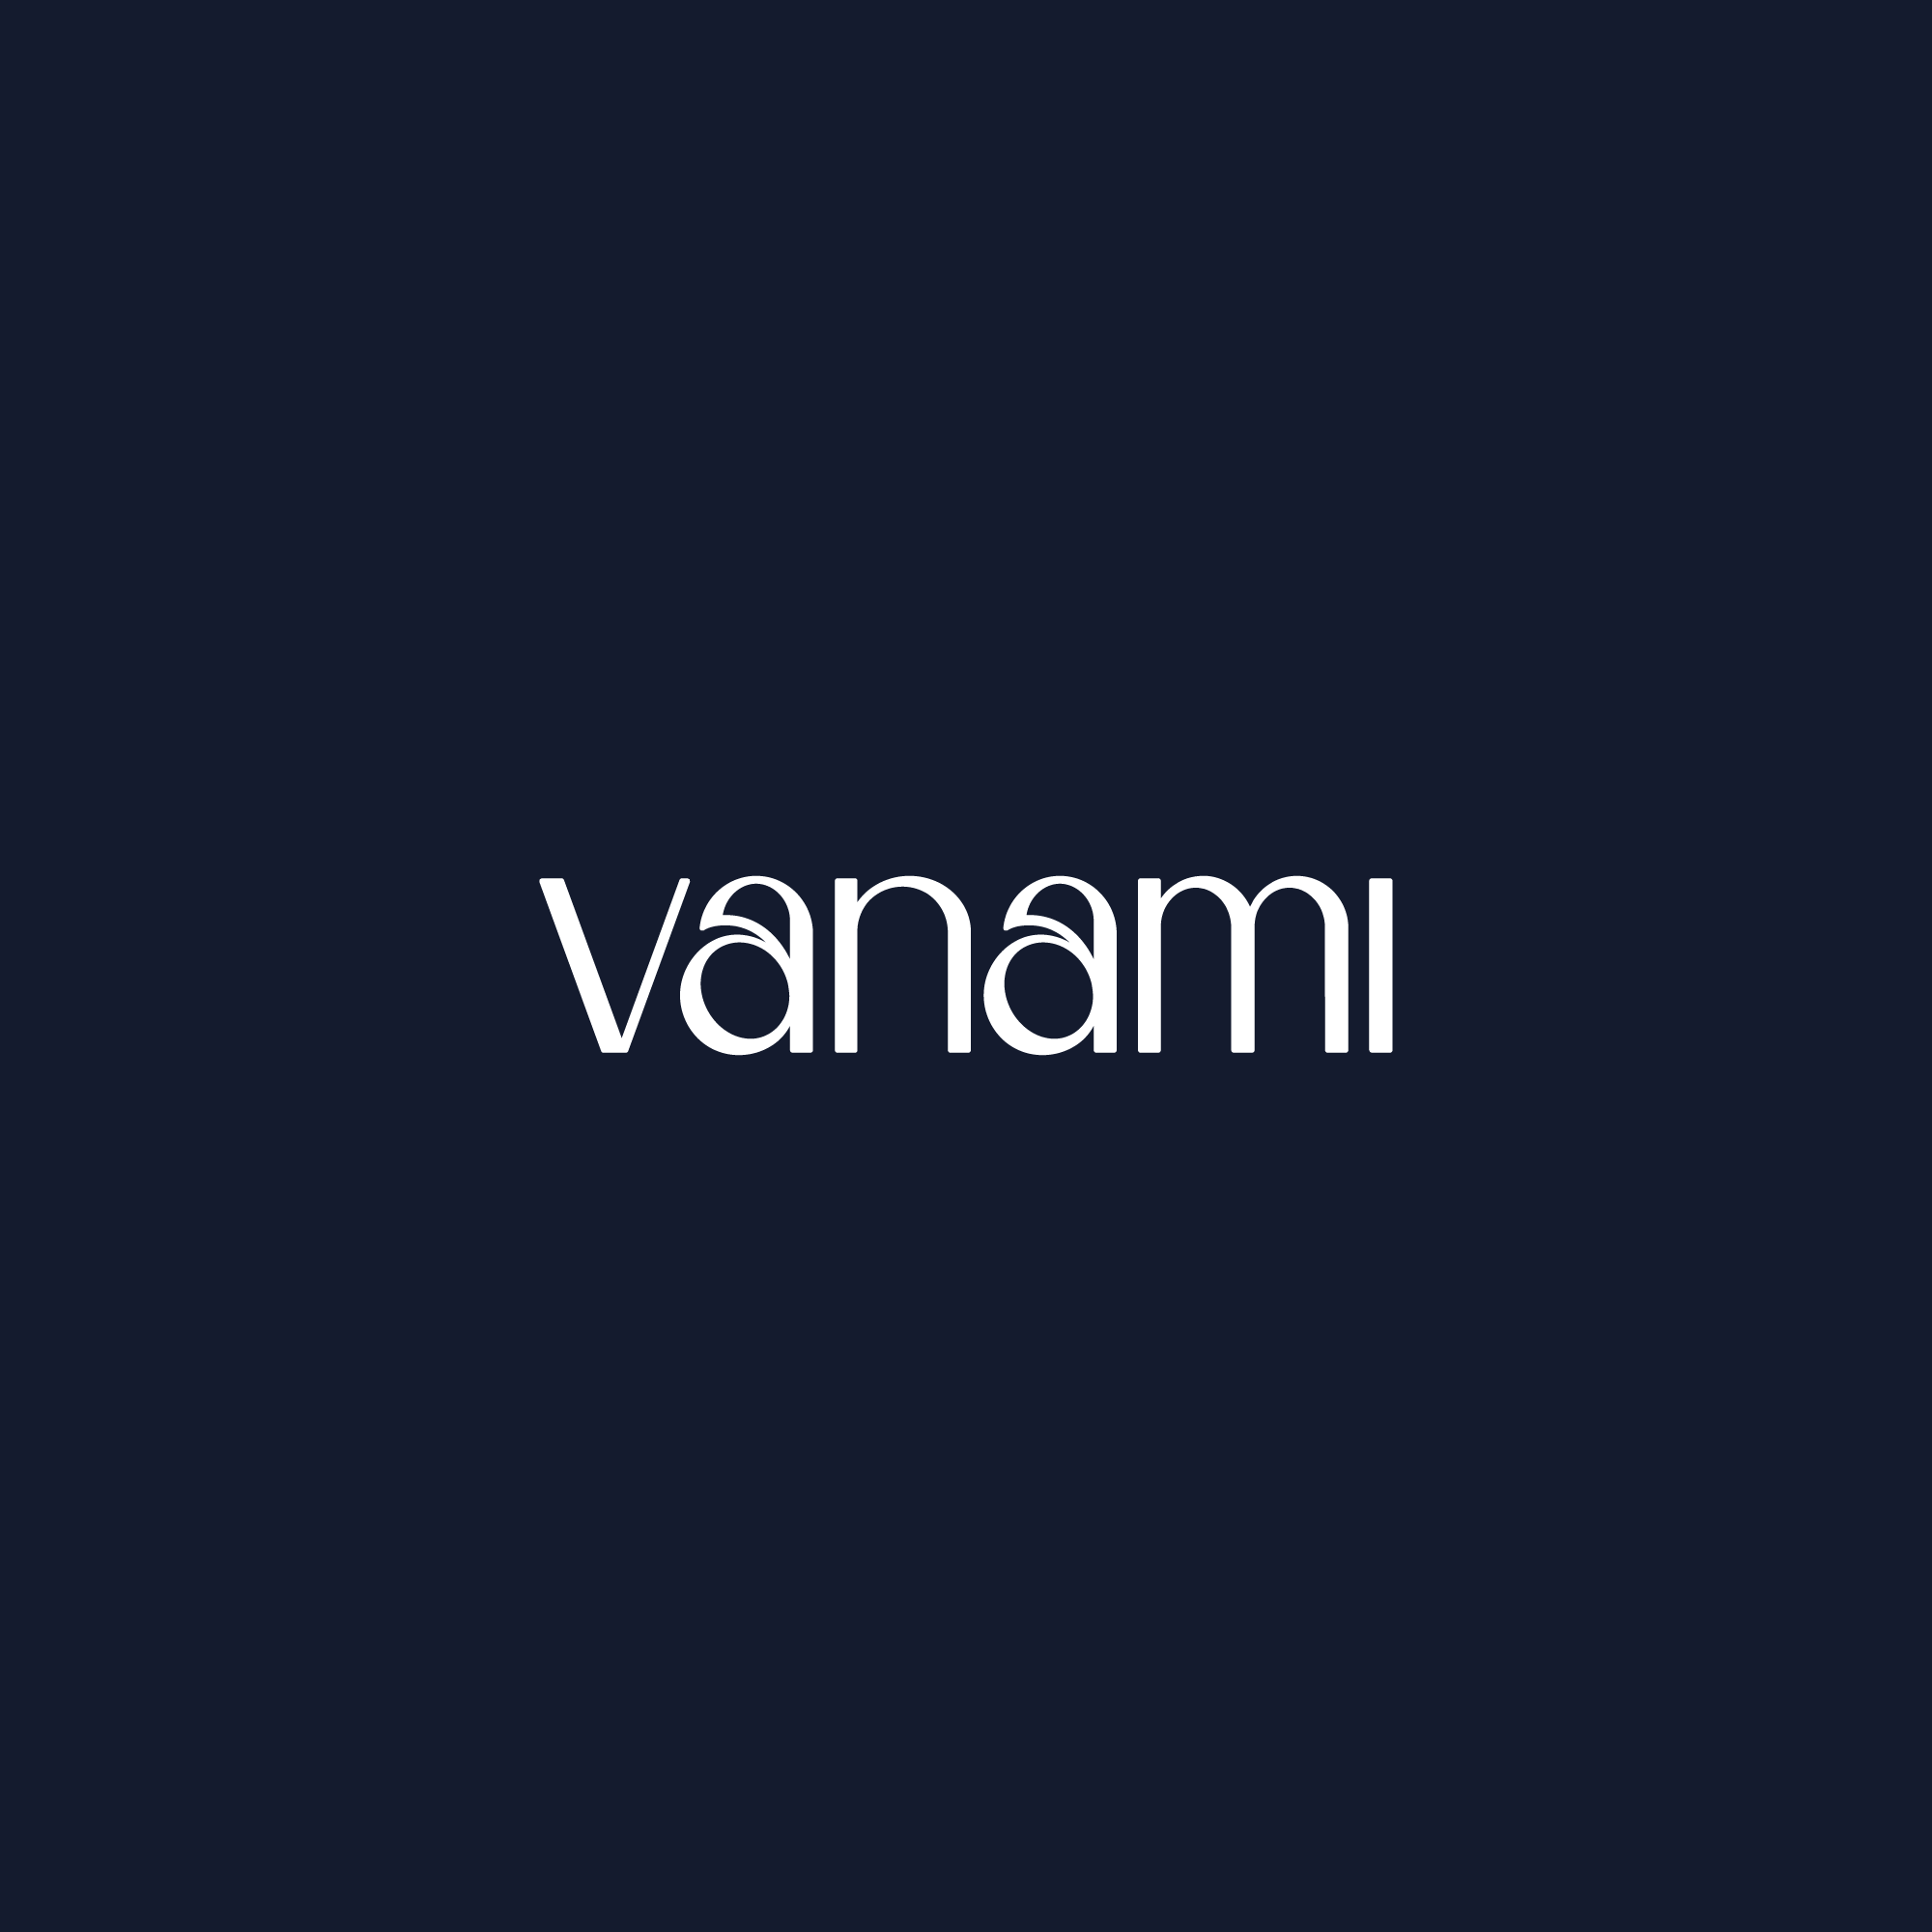 Vanami Logotype